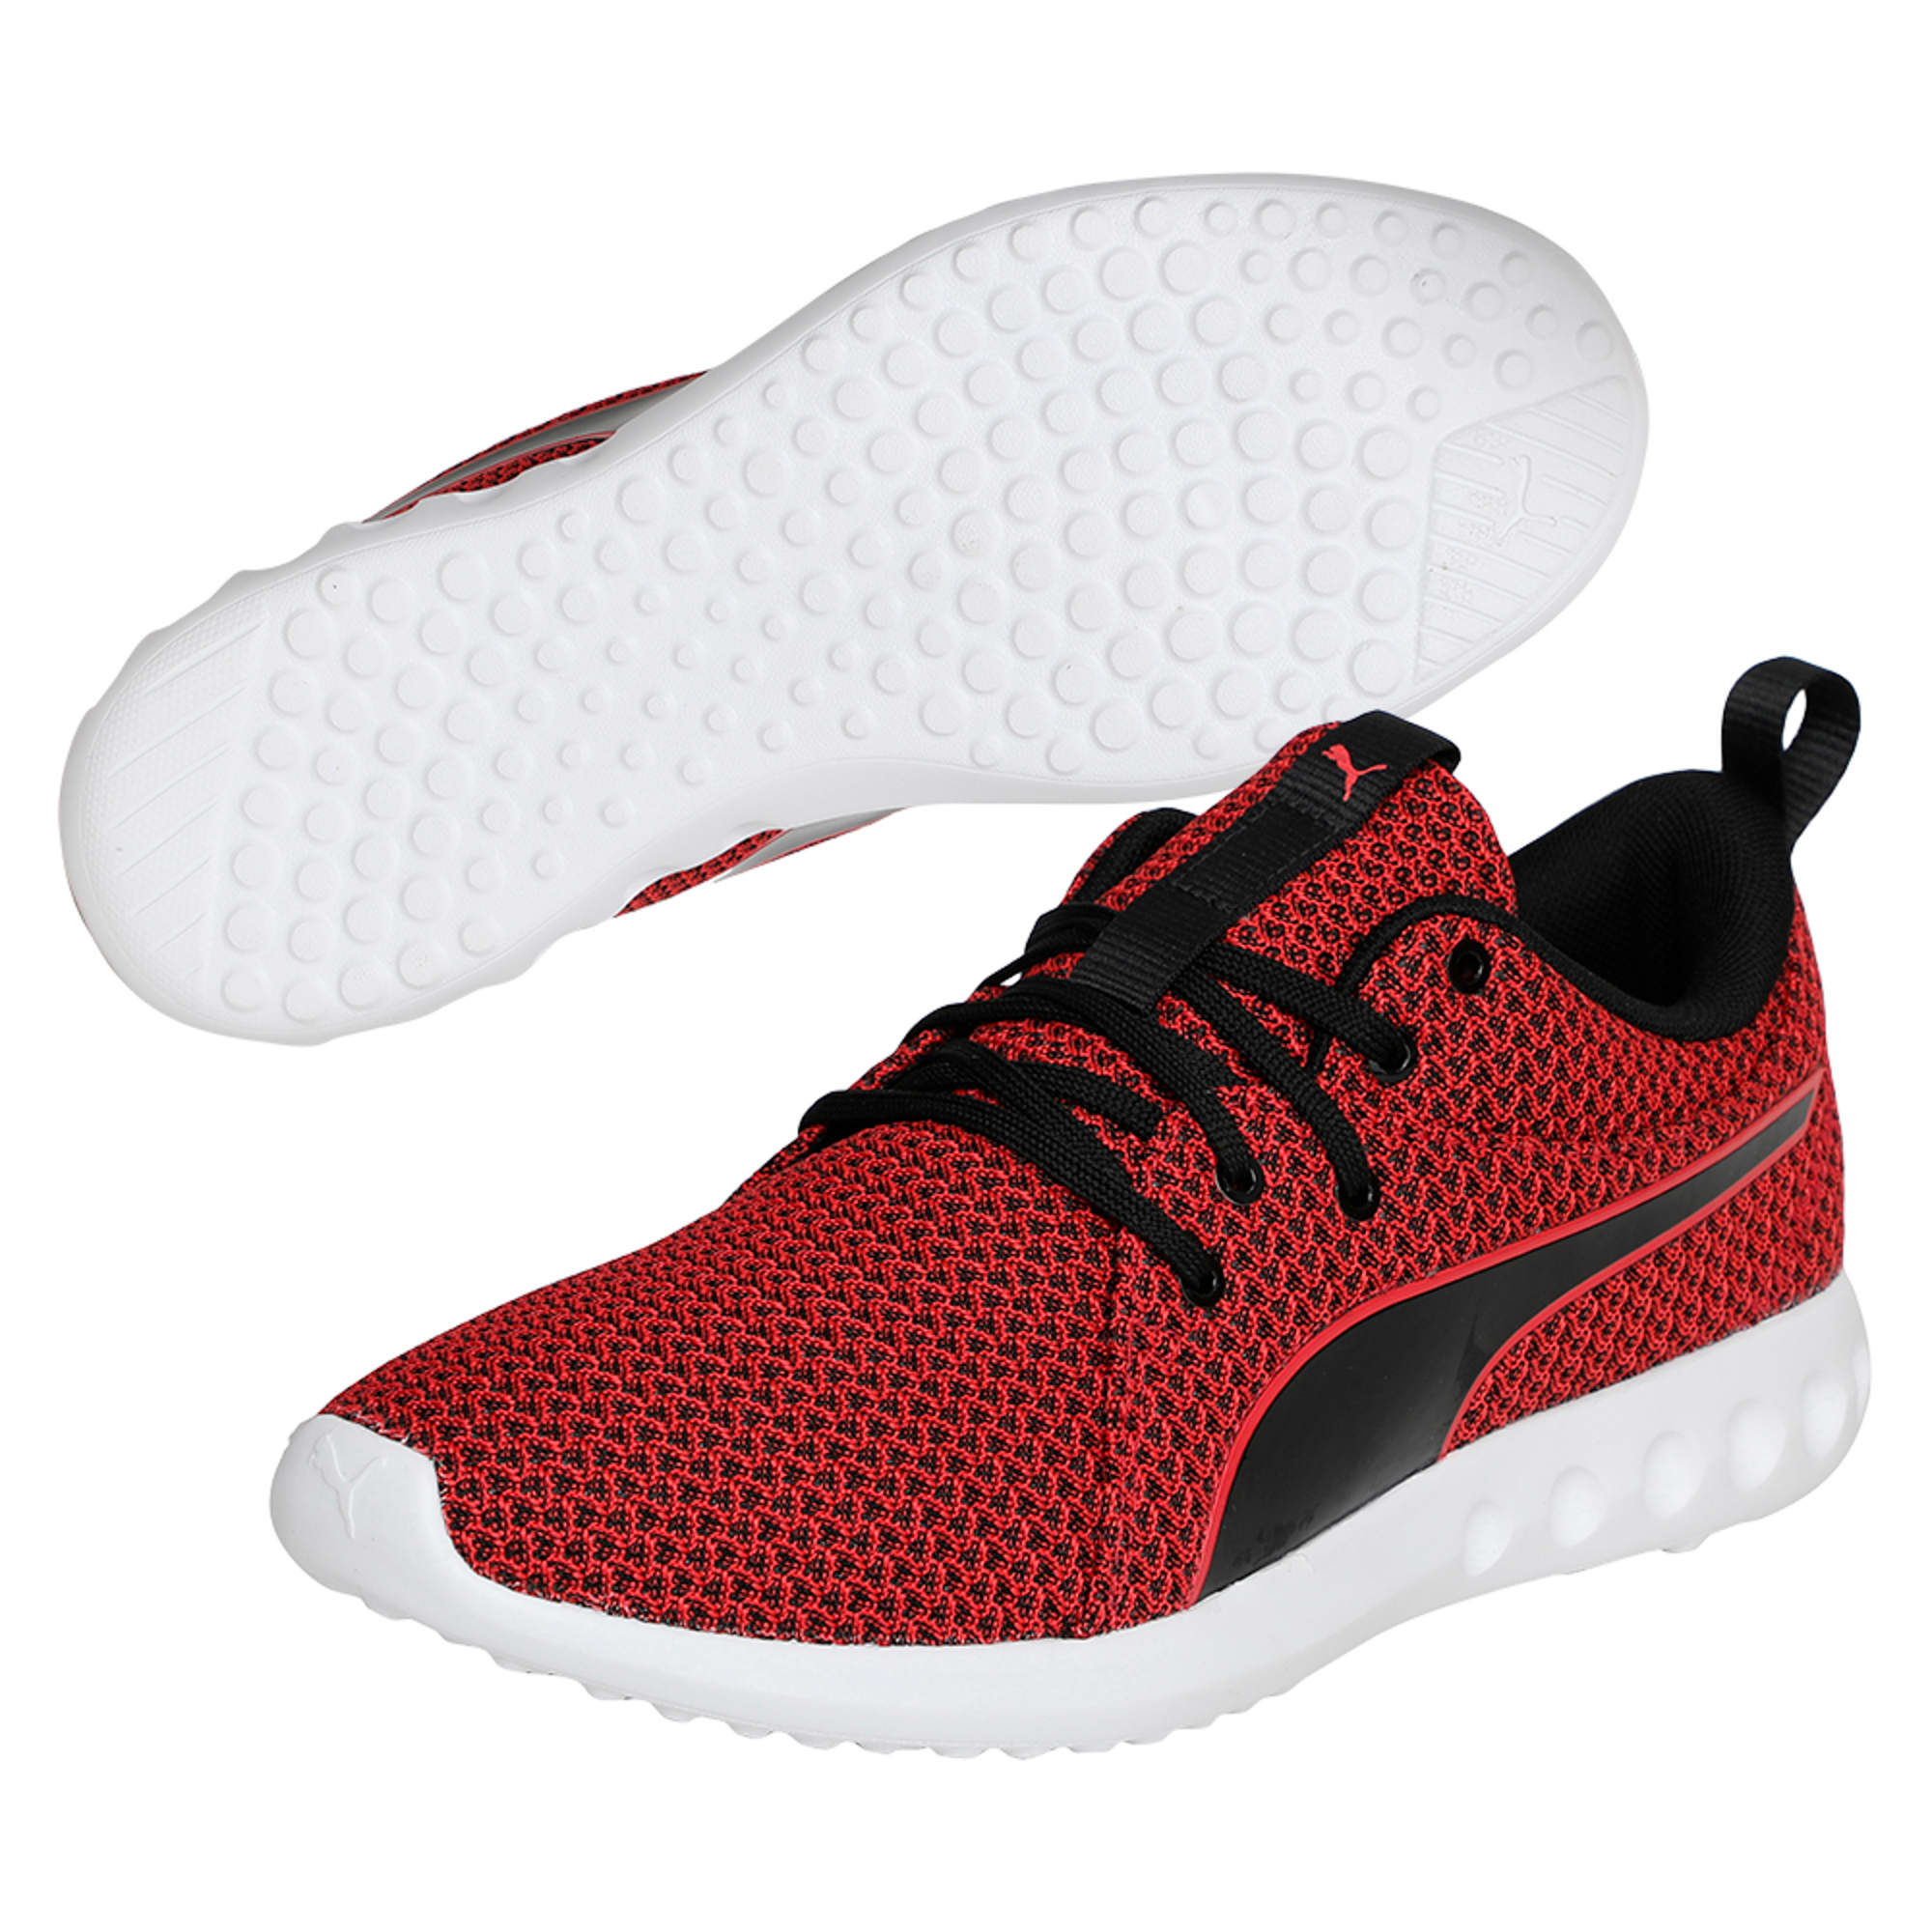 puma carson 2 idp running shoes